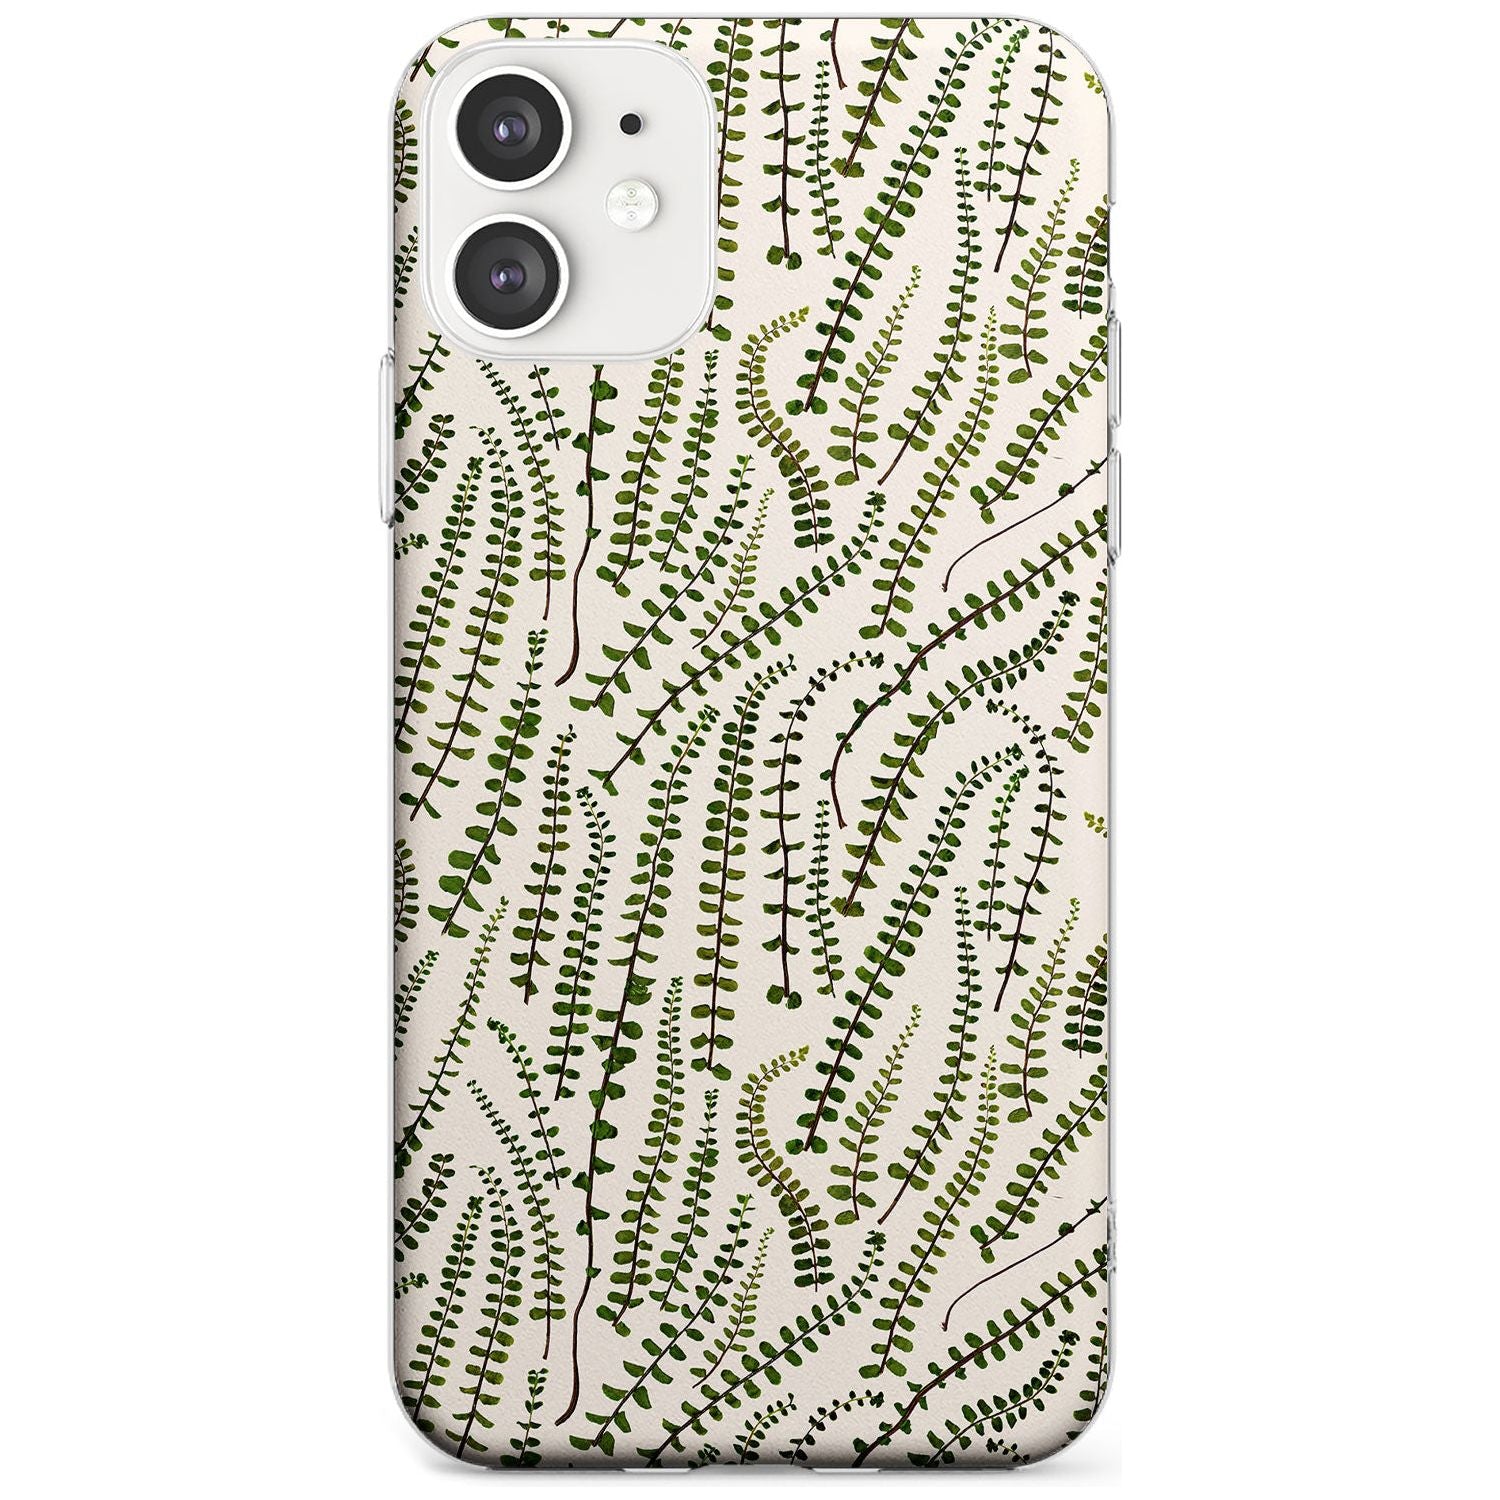 Fern Leaf Pattern Design - Cream Slim TPU Phone Case for iPhone 11